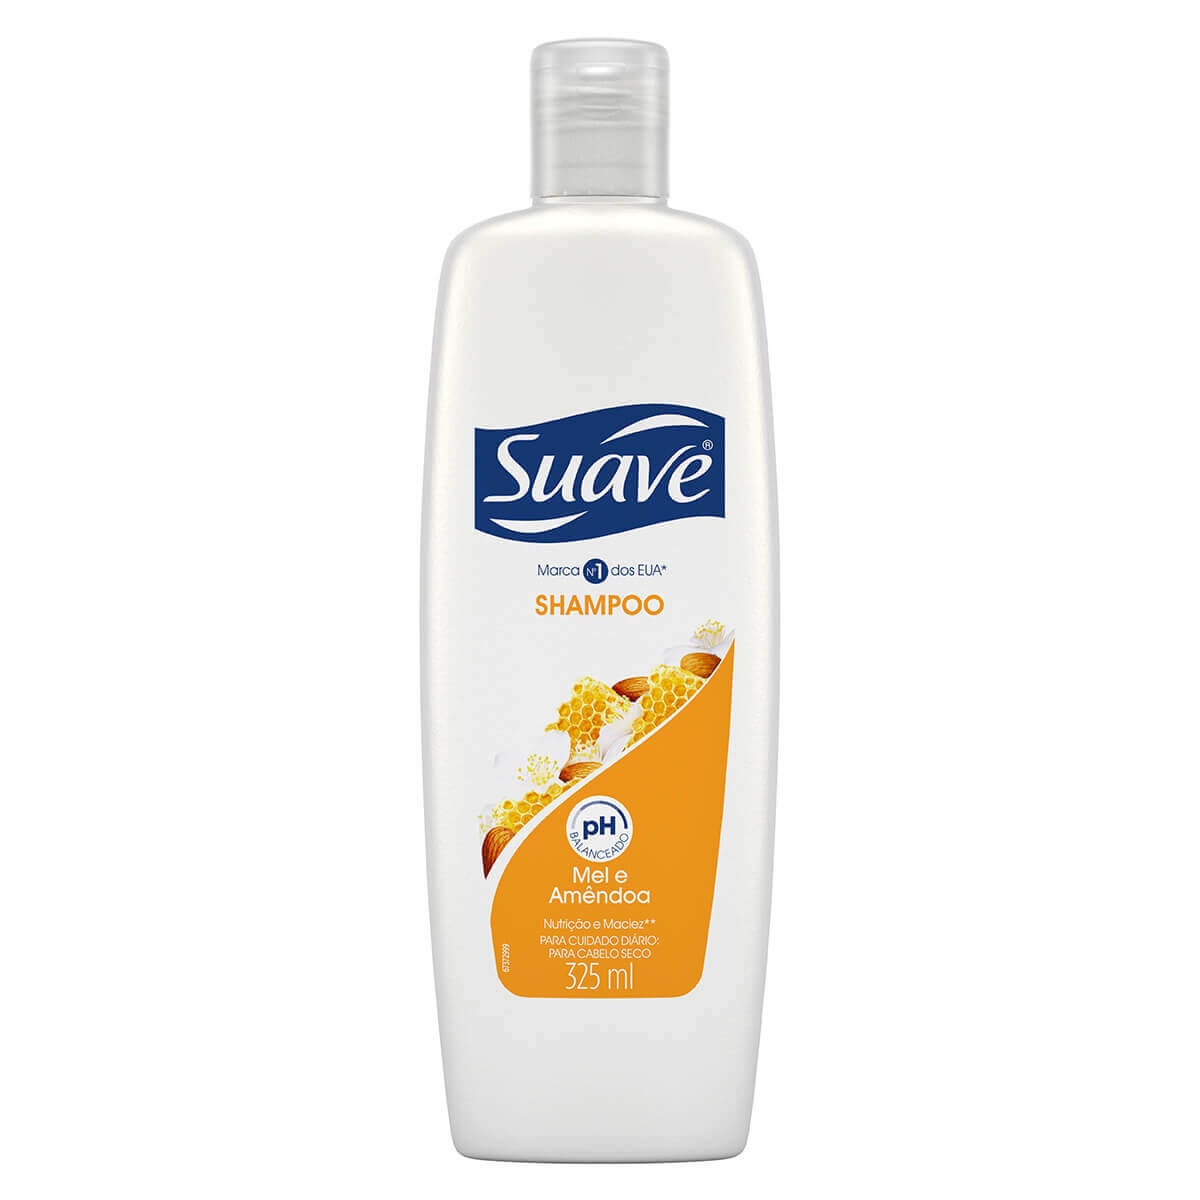 Shampoo Suave Naturals Força e Brilho Mel e Amêndoas 325ml